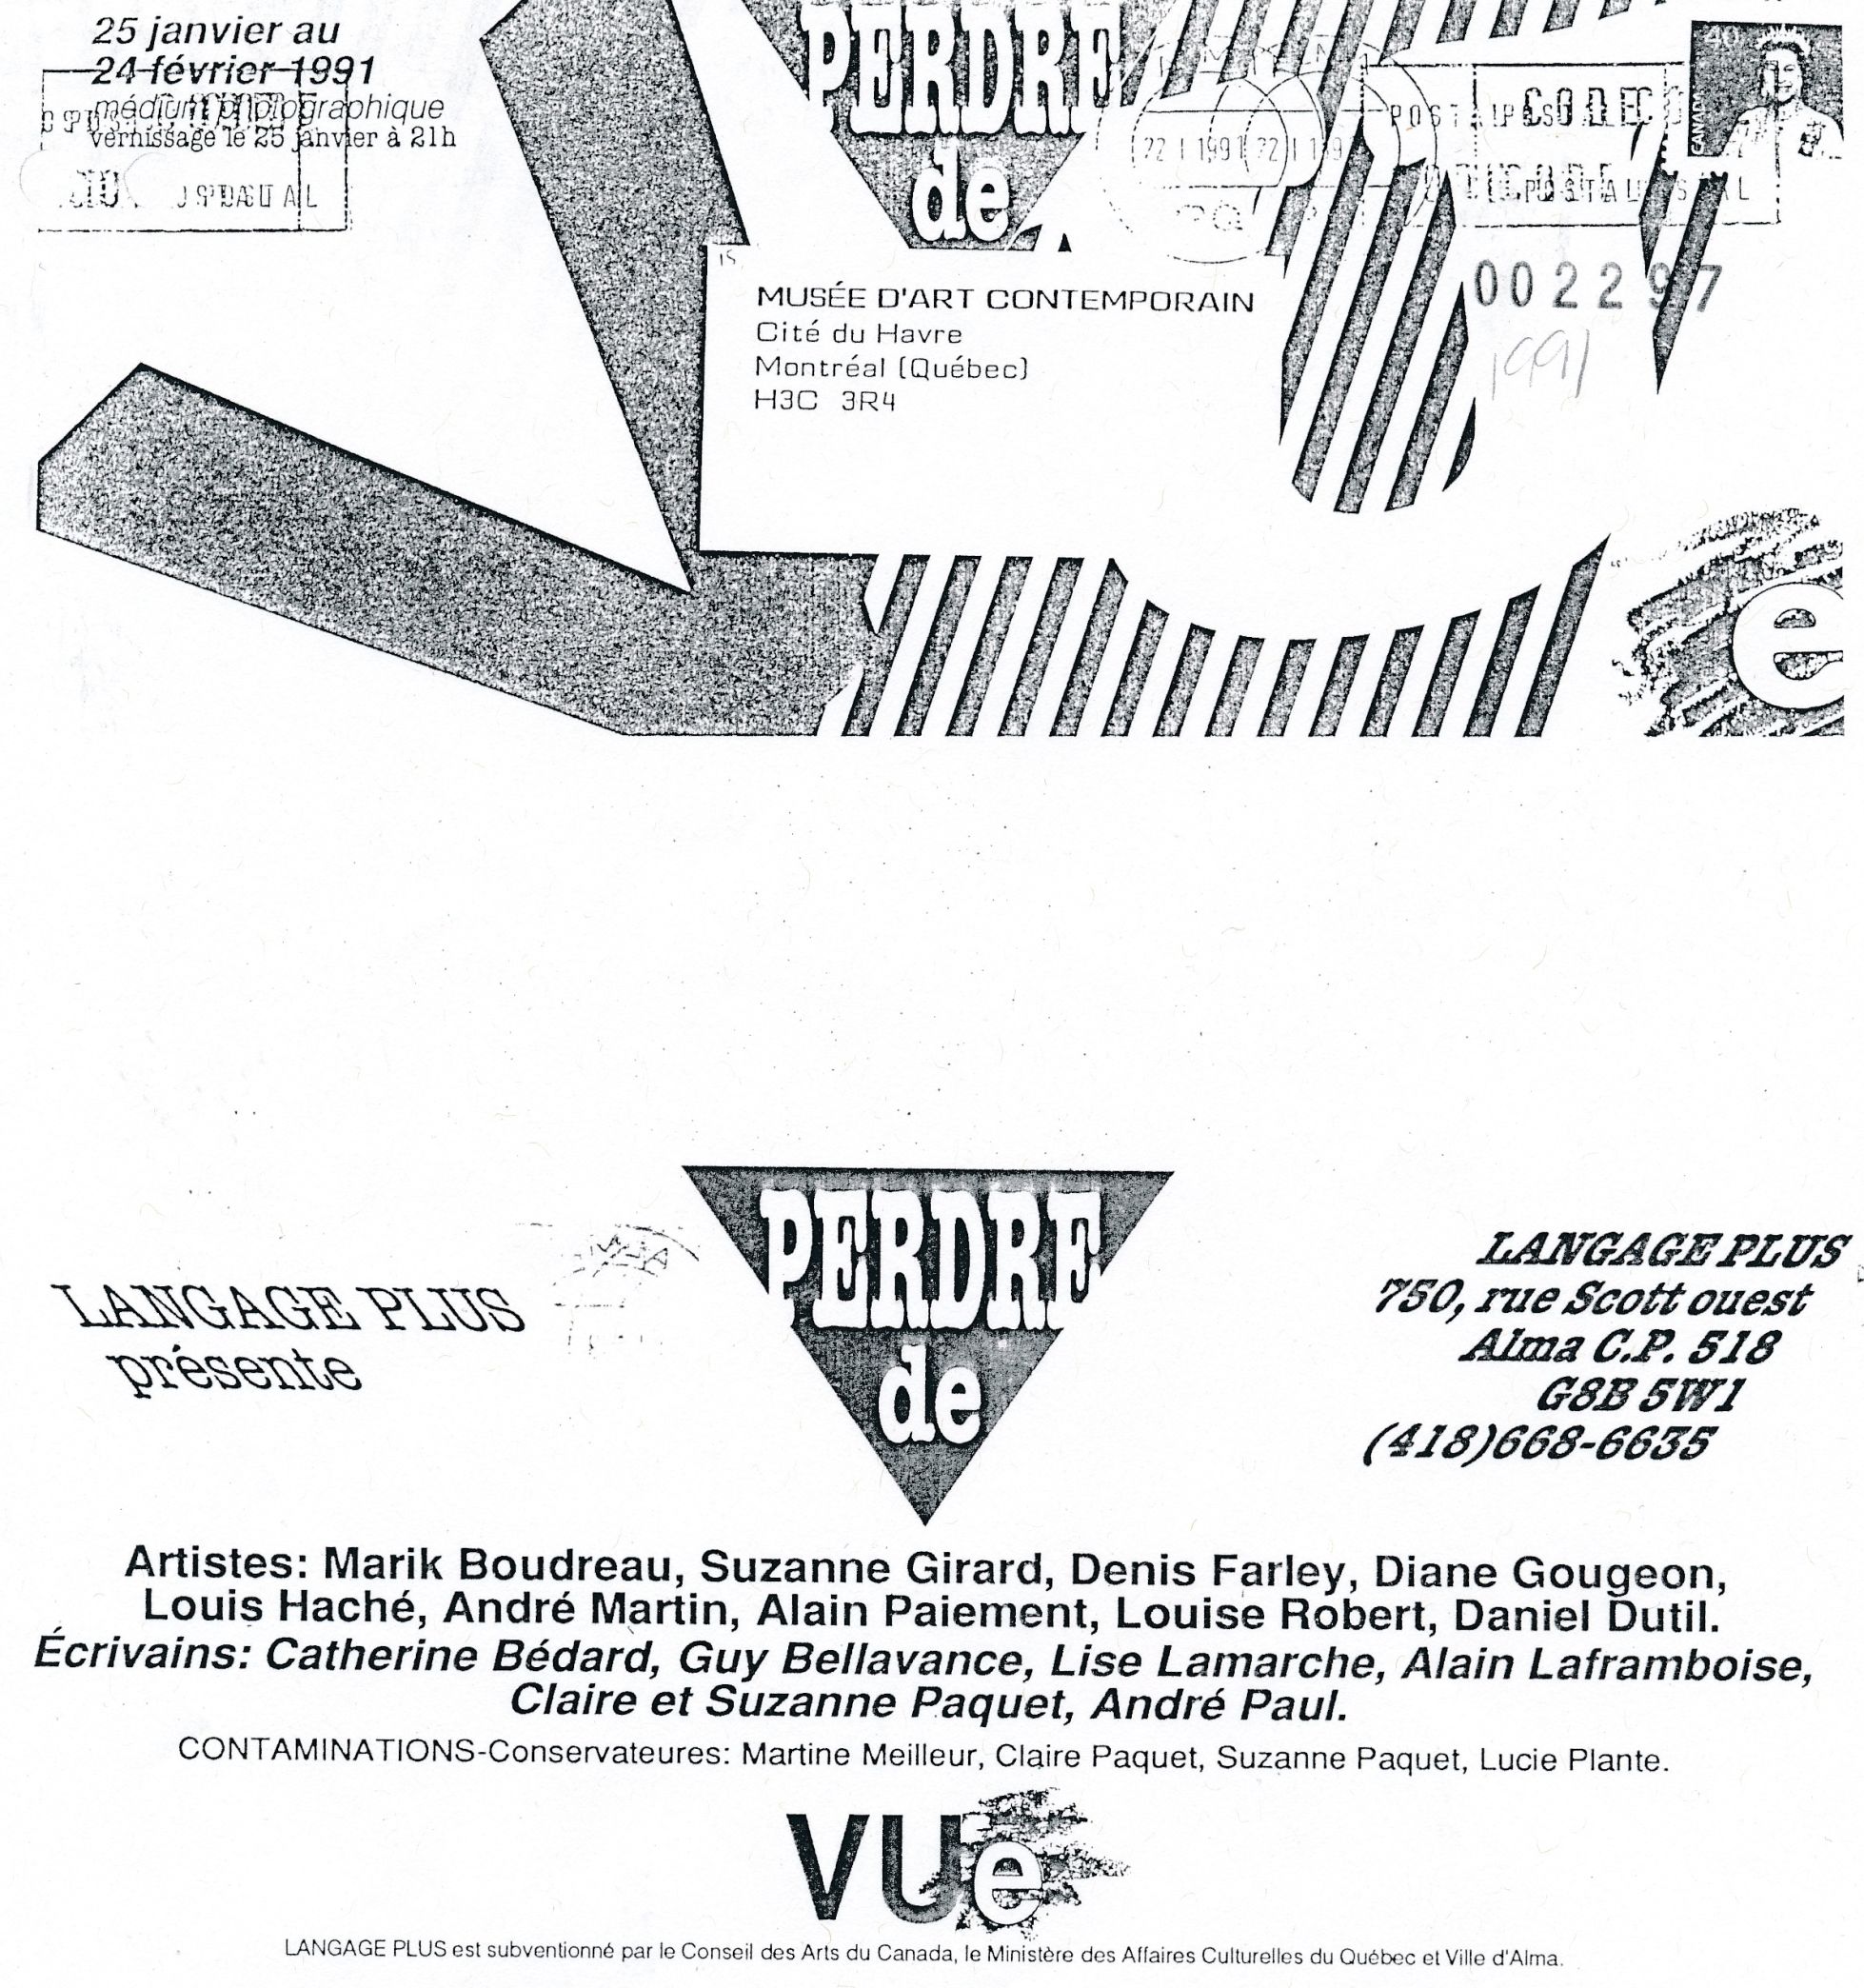 Carton d’invitation de l’exposition Perdre de vue, Langage Plus, Alma, 1991.